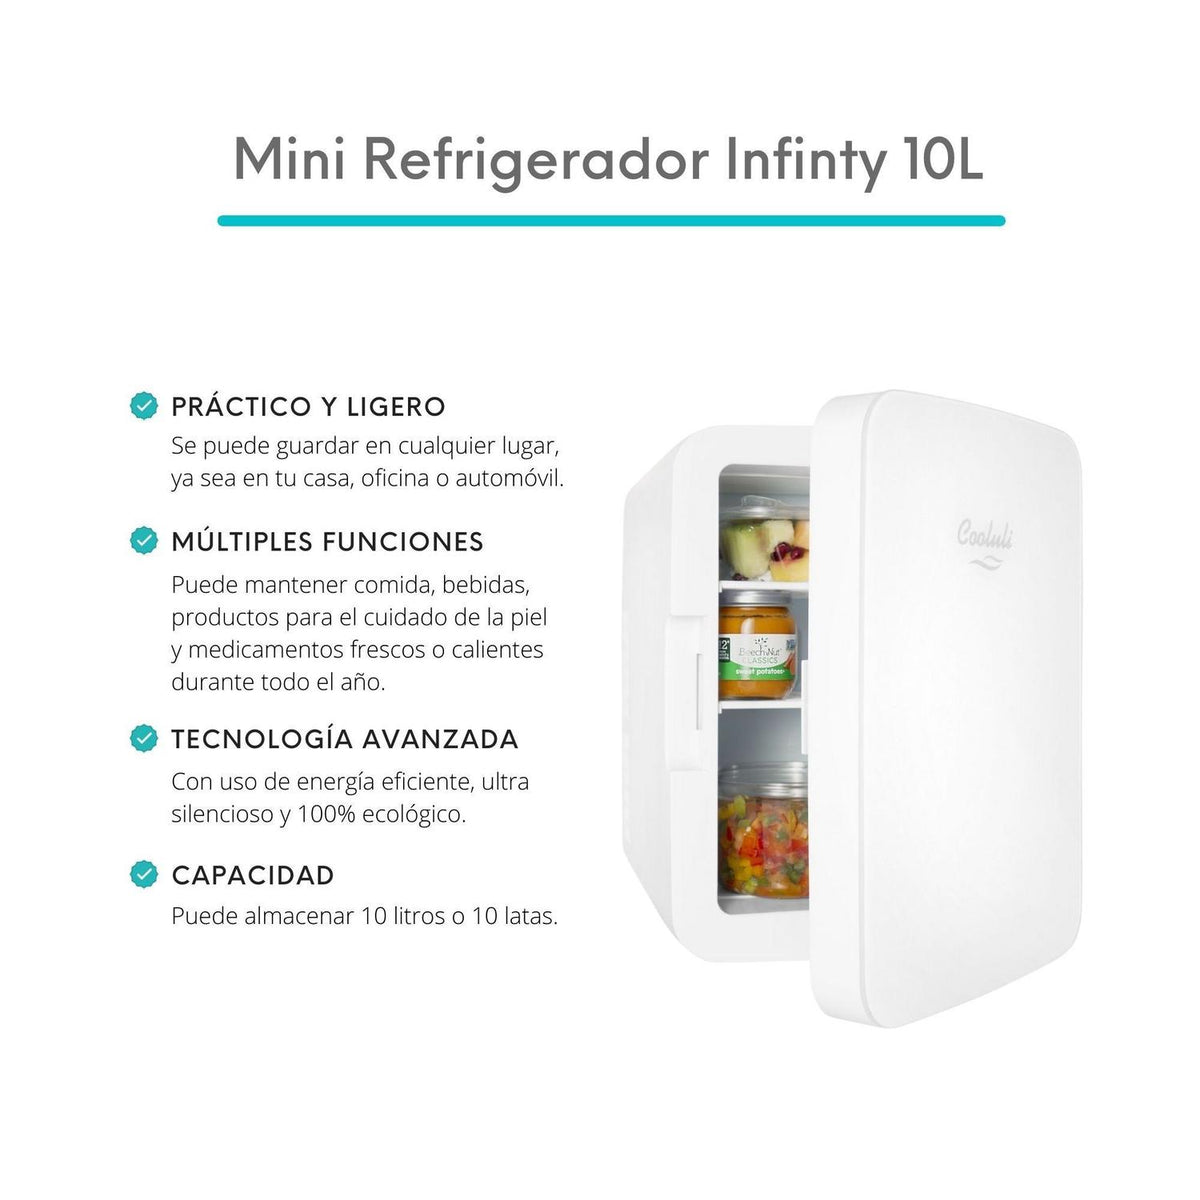 Cooluli Mini Refrigerador Mini Refrigerador Infinity 10L - vertikal